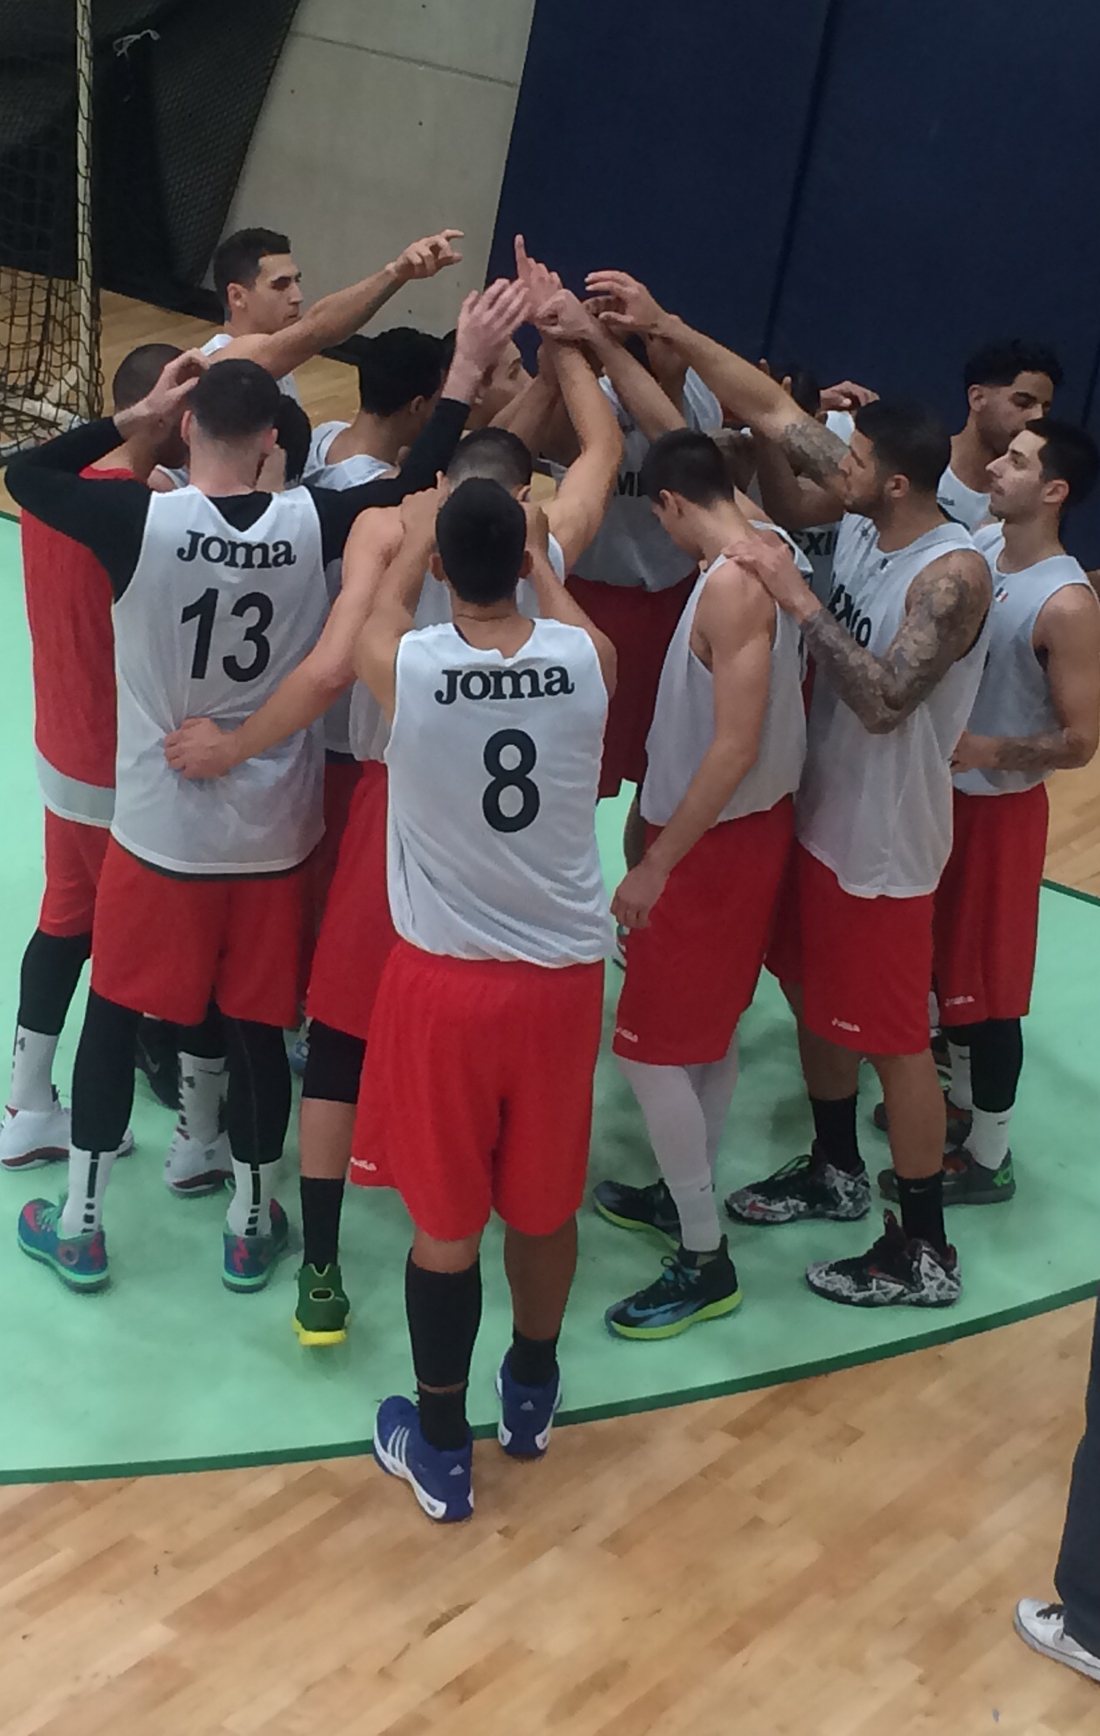 seleccion mexicana de basquet sufre una derrota ante croacia a pocos dias del mundial en viva basquet